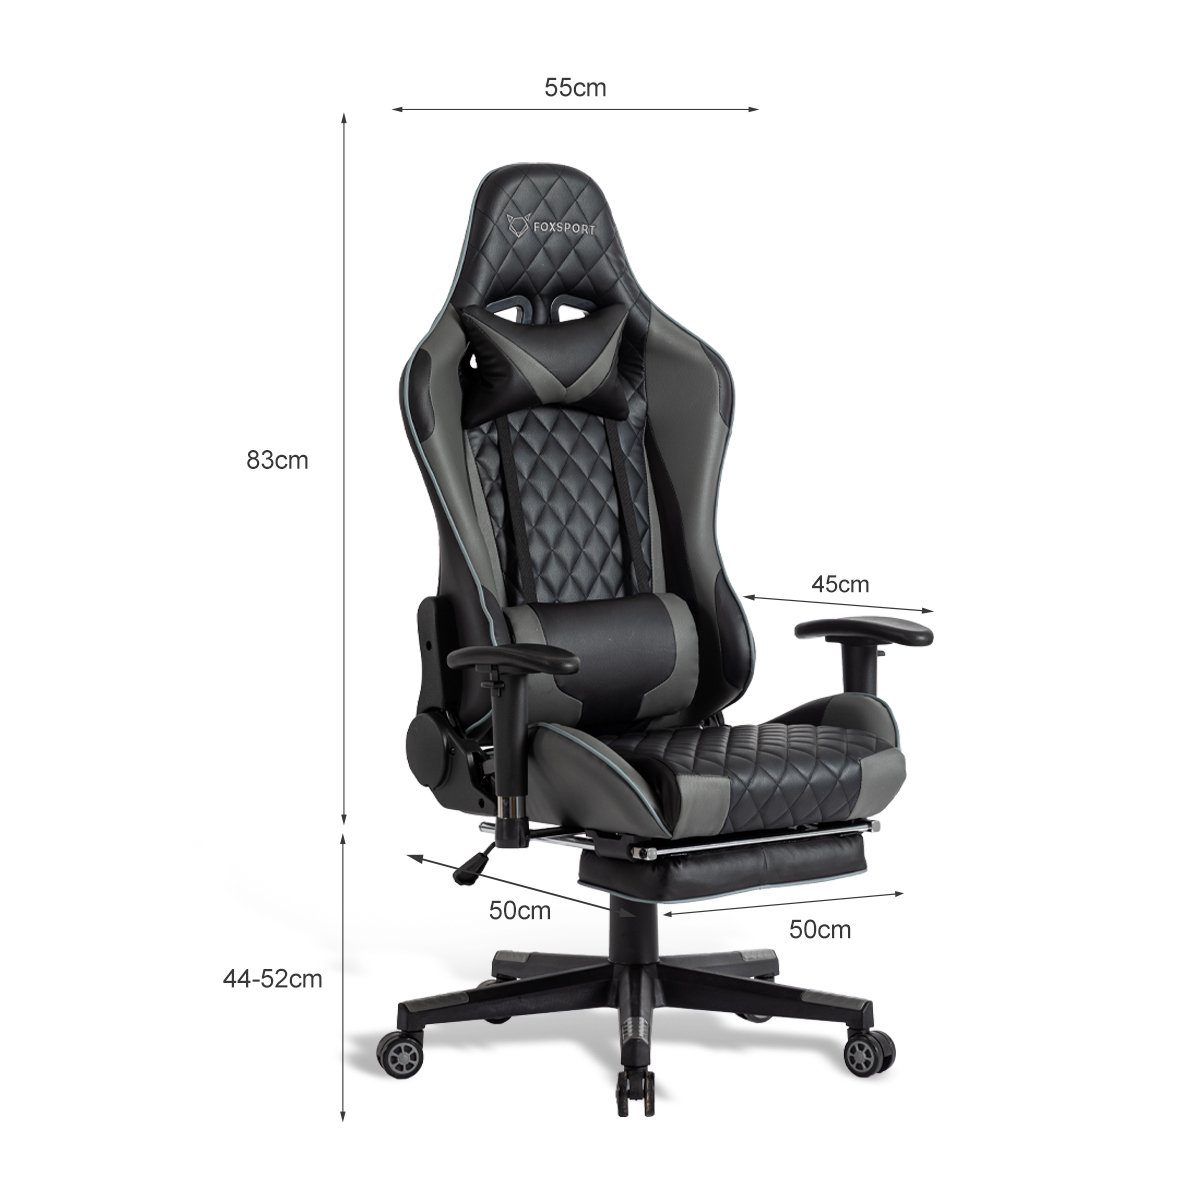 Fußstütze, Eingebauter Gaming-Stuhl Pedal-Gaming-Stuhl (Professioneller Wippmechanismus IKIDO Mit und Gamingstuhl), Beinauflage grau